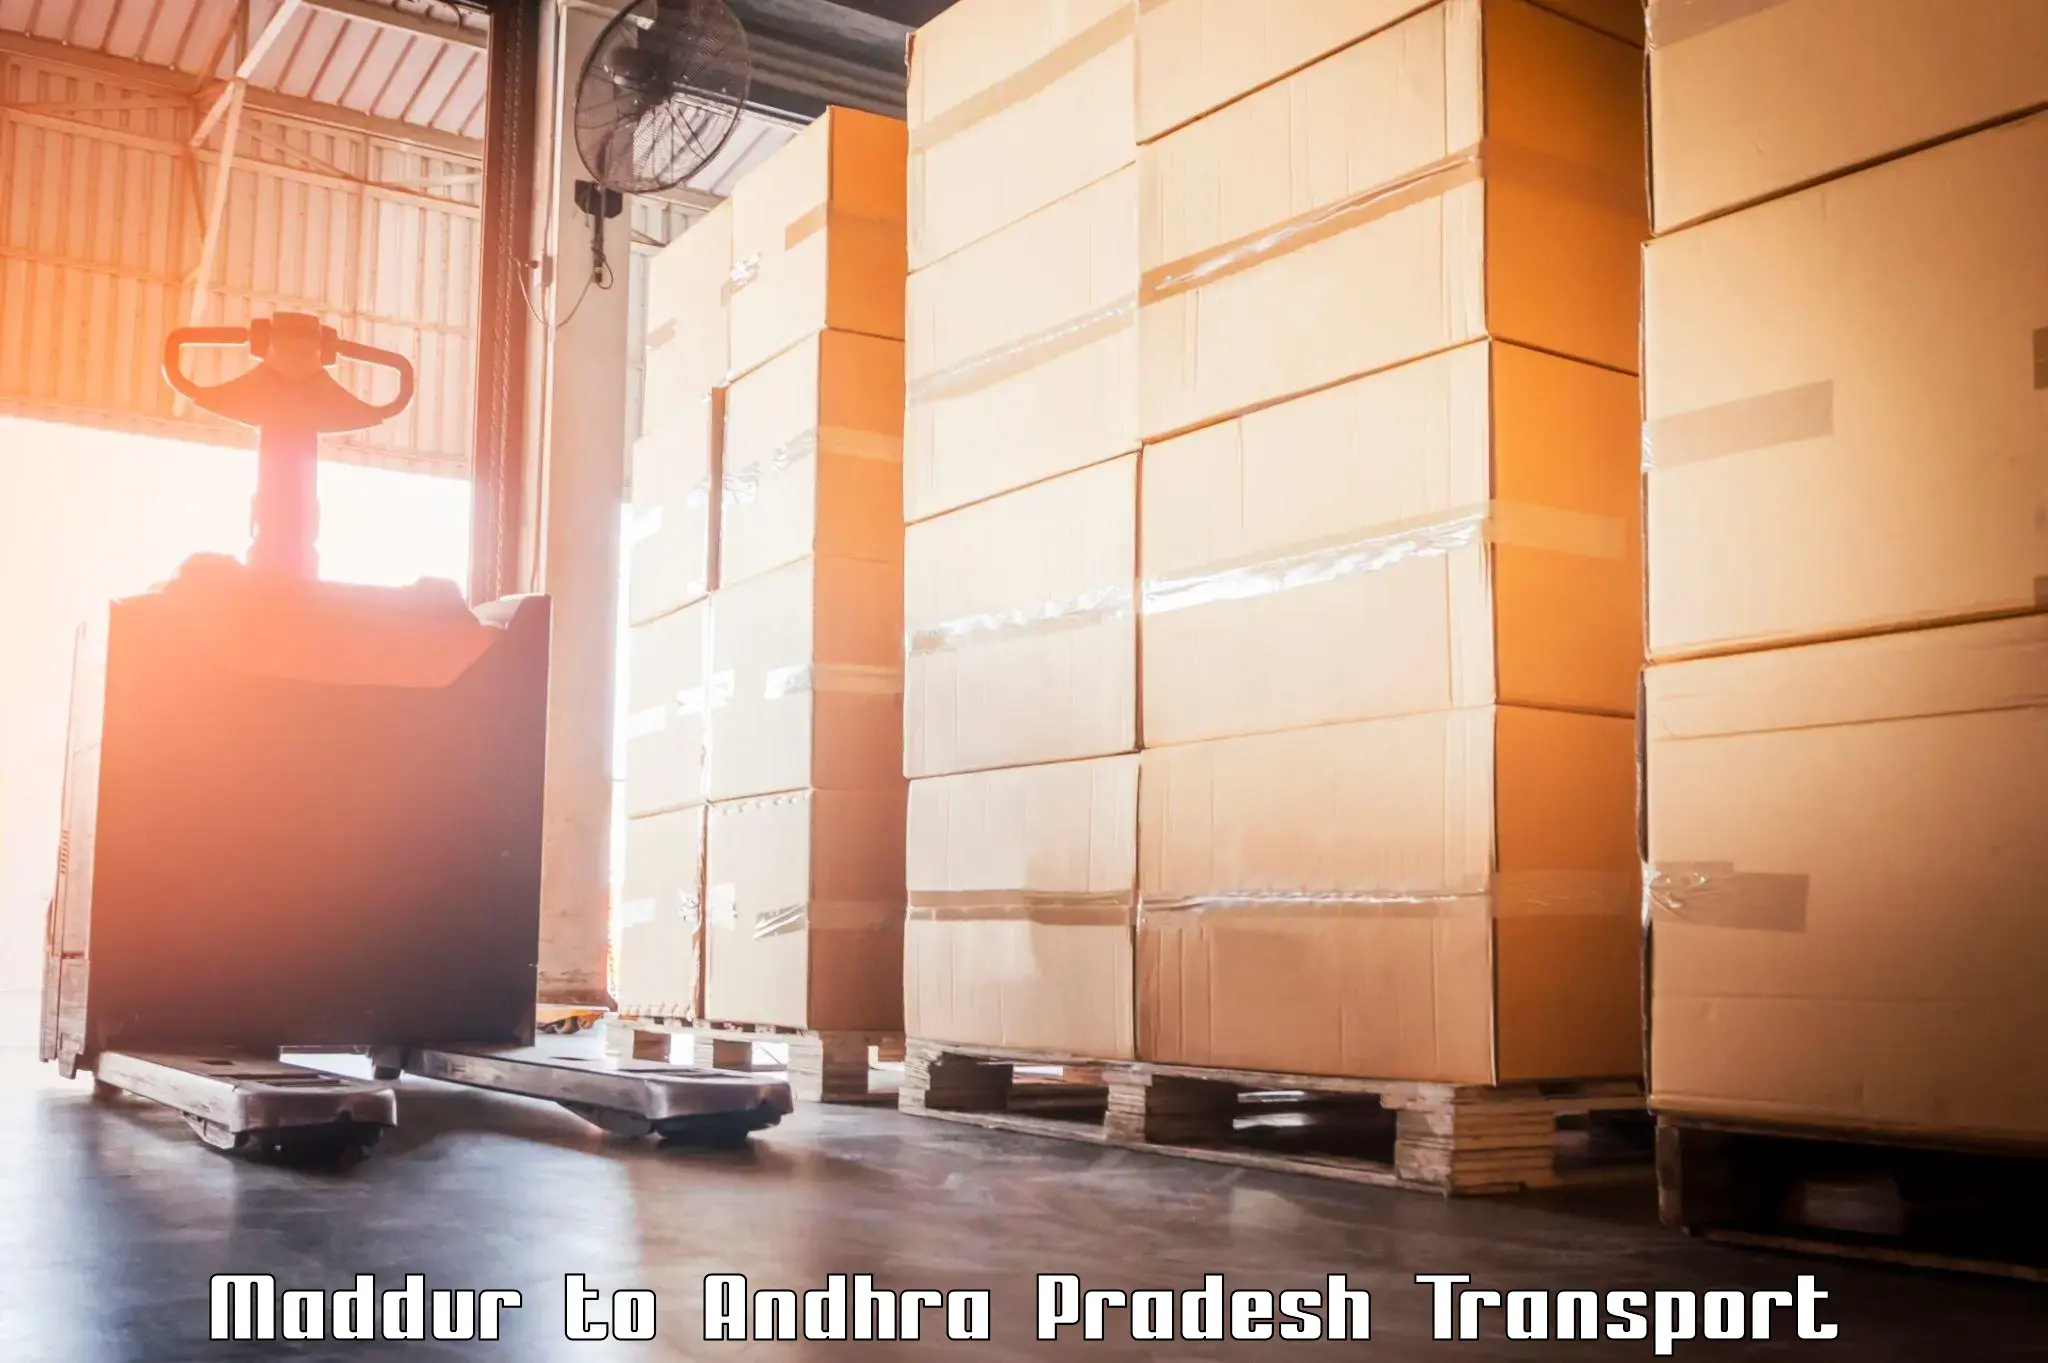 Transport in sharing Maddur to Koruprolu